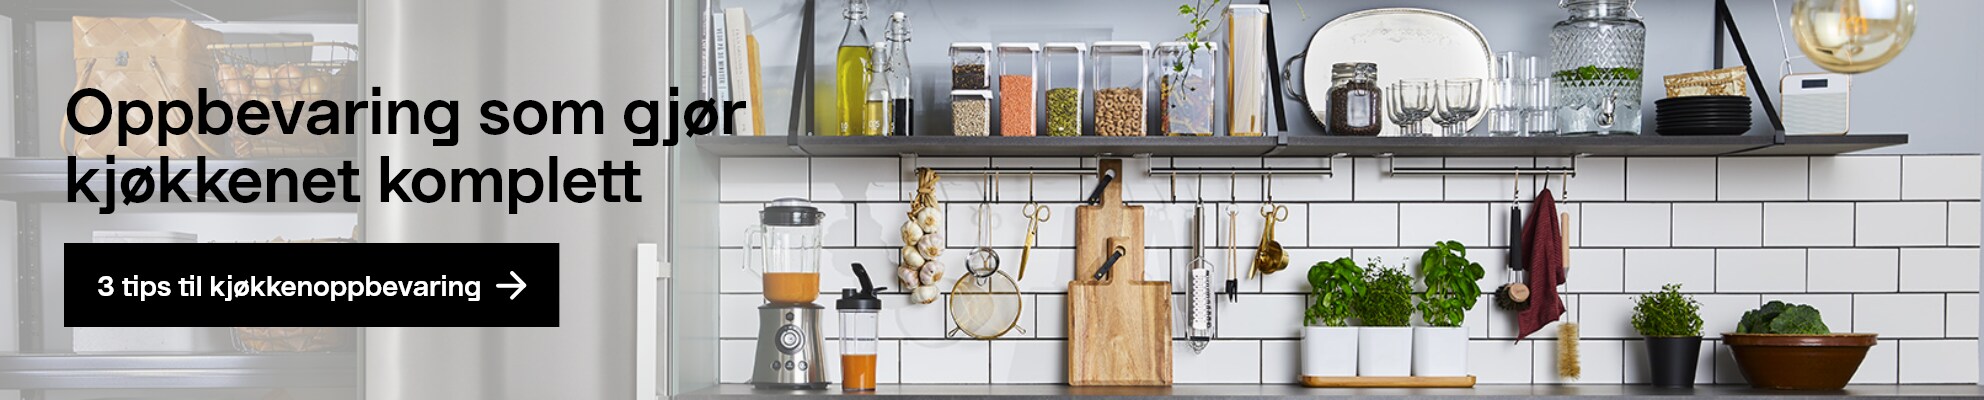 Oppbevaring som gjør 
            kjøkkenet komplett. 3 tips til kjøkkenoppbevaring 